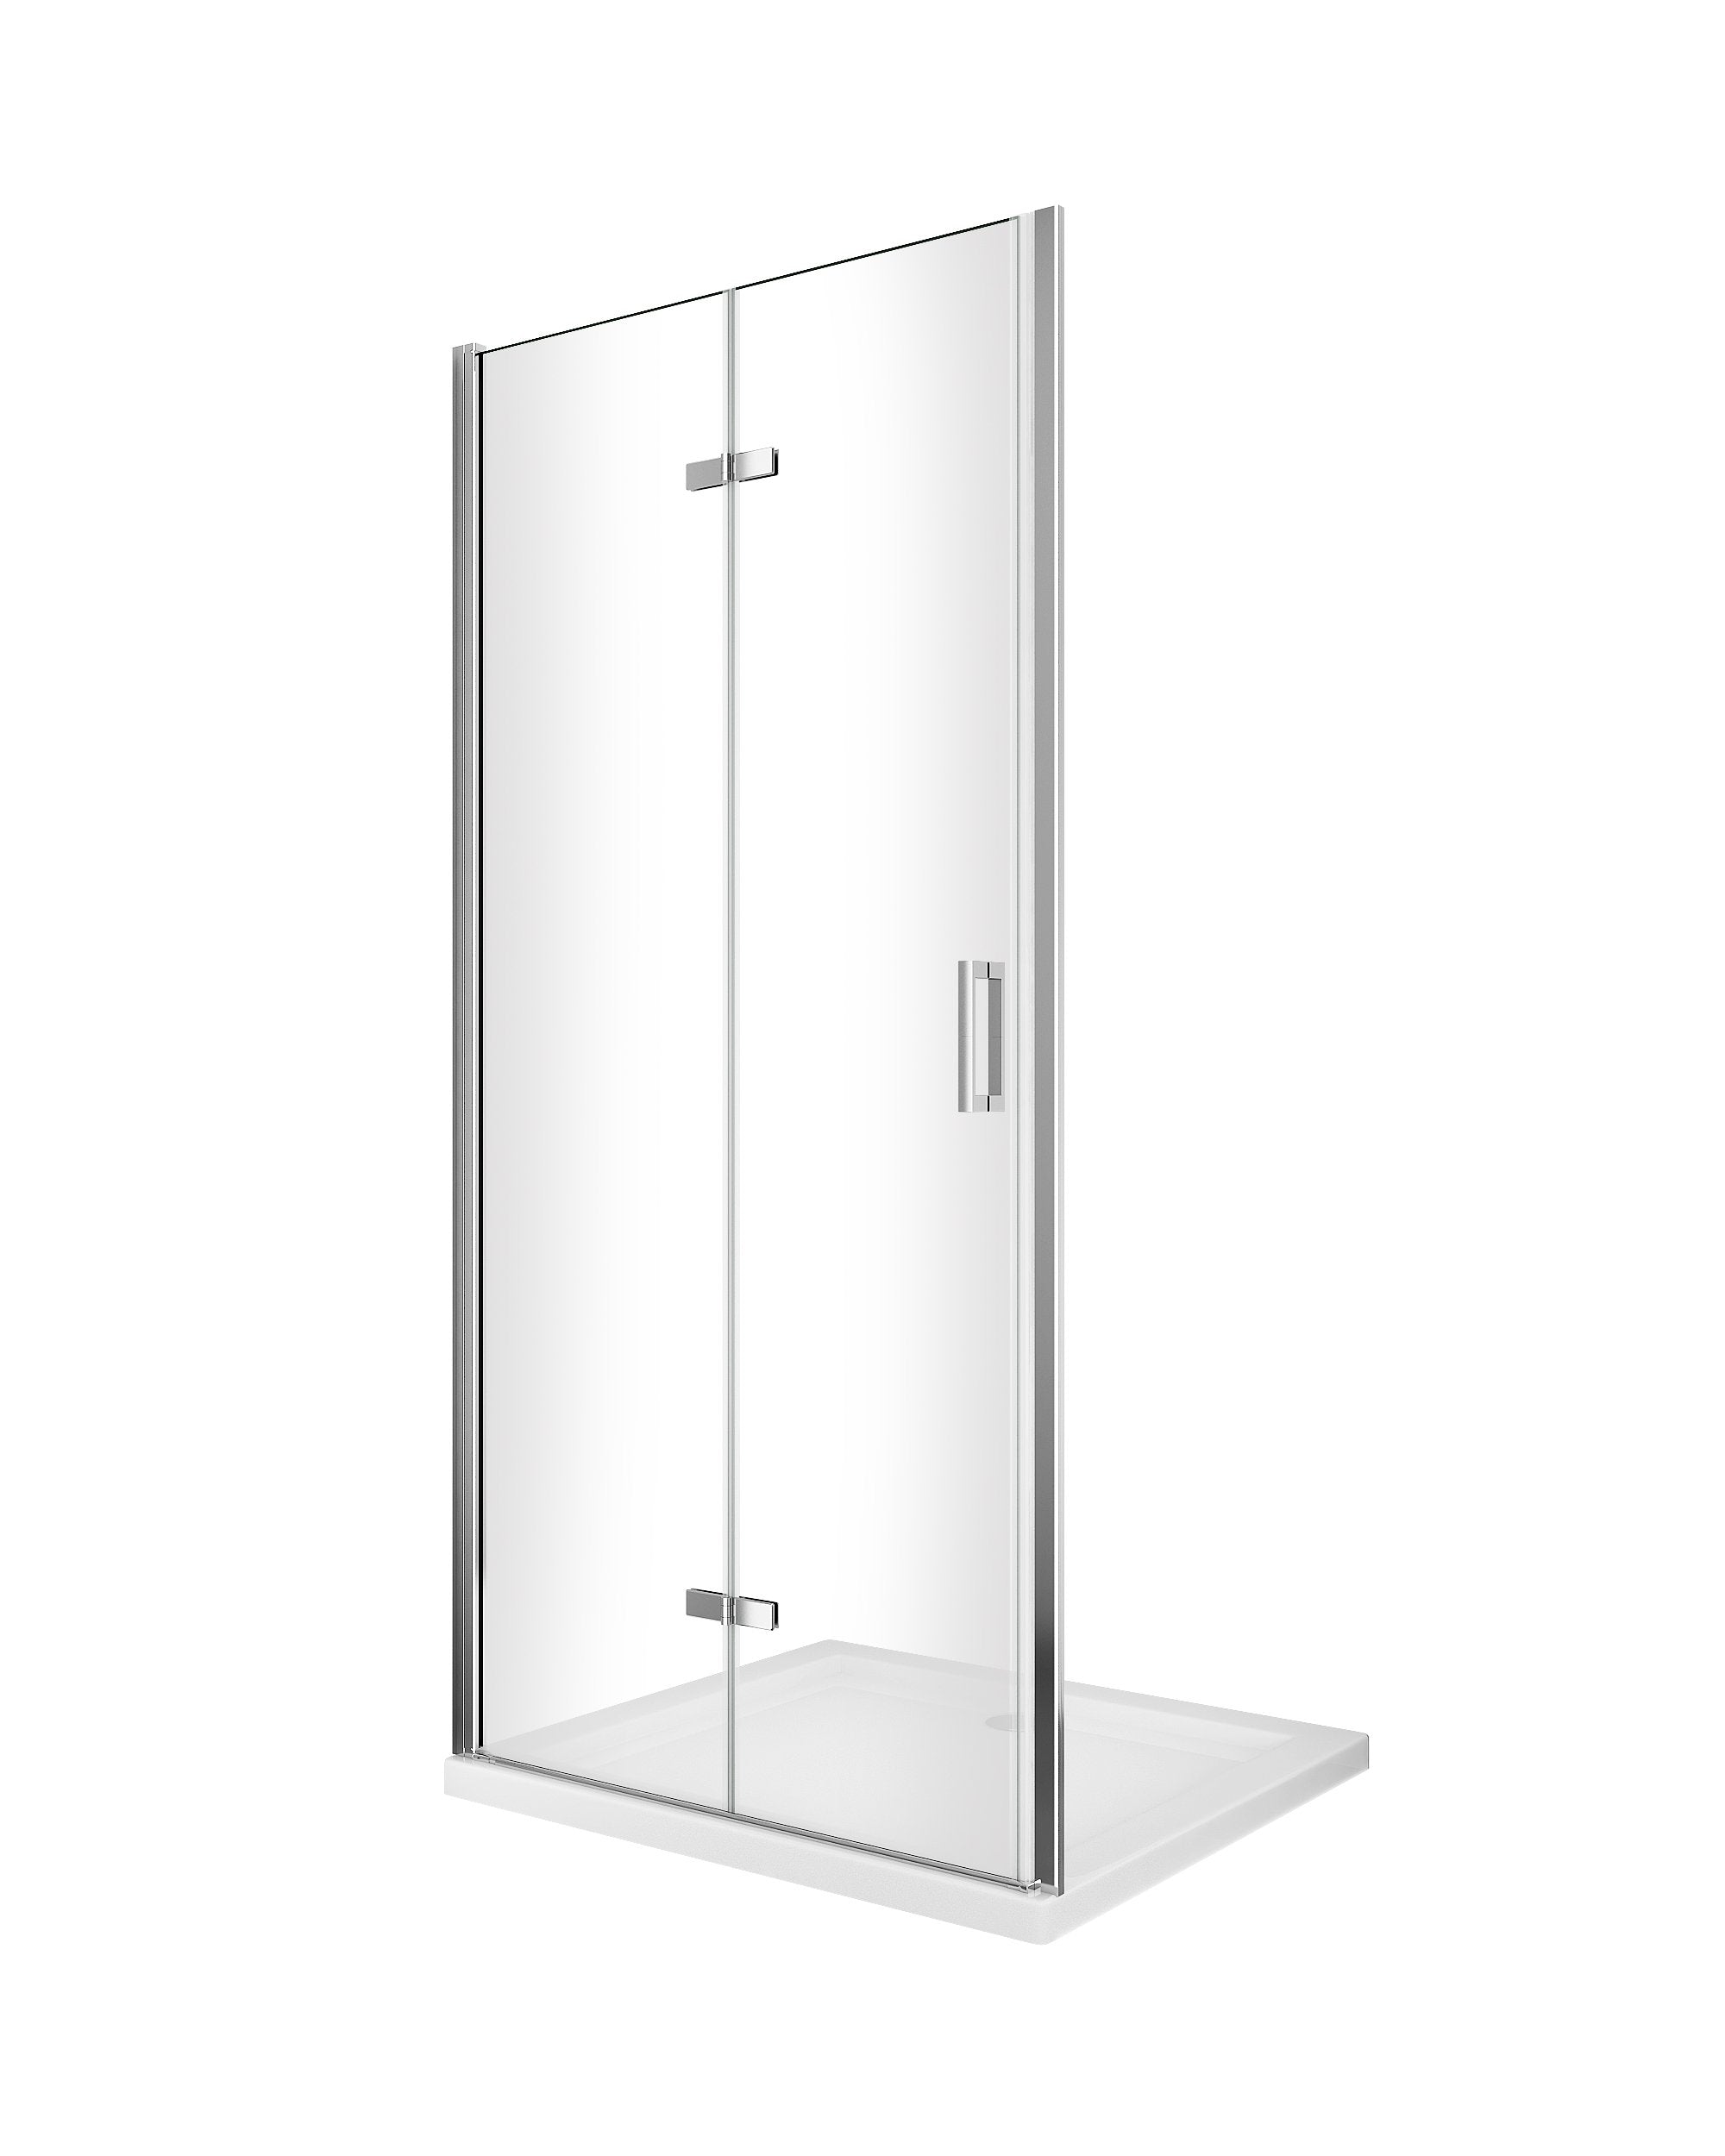 Porta box doccia con apertura a libro pieghevole a soffietto per installazione in nicchia H 190 cromo trasparente anticalcare misura 88-91,5